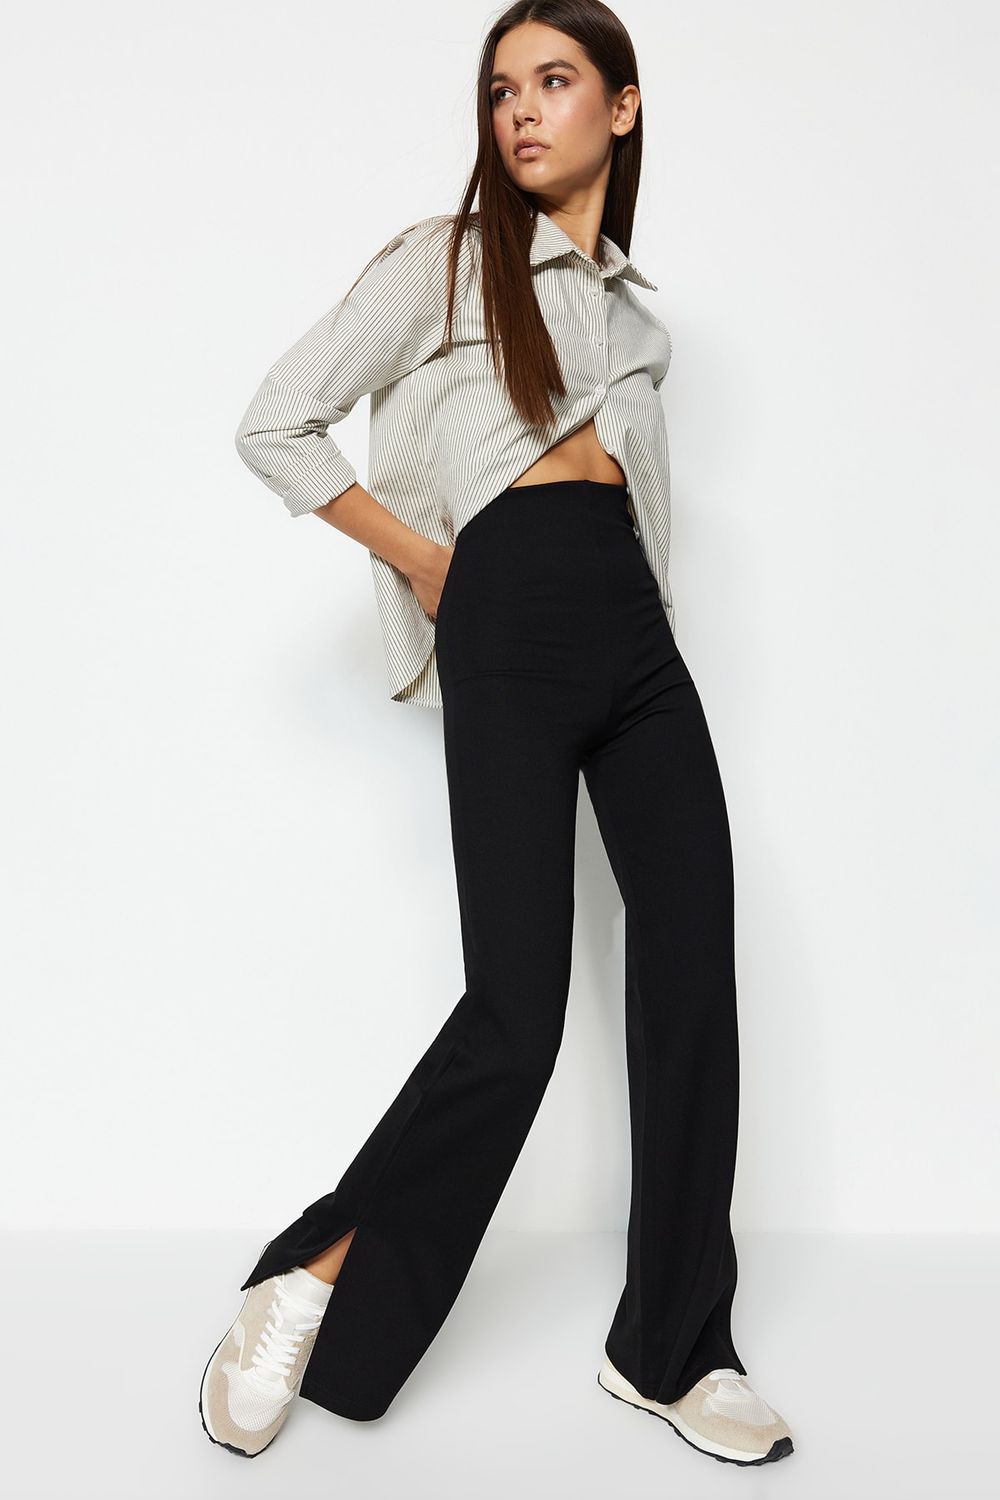 Zara The Pleated Boyfriend Relaxed Fit Black Jeans Women's Size 12